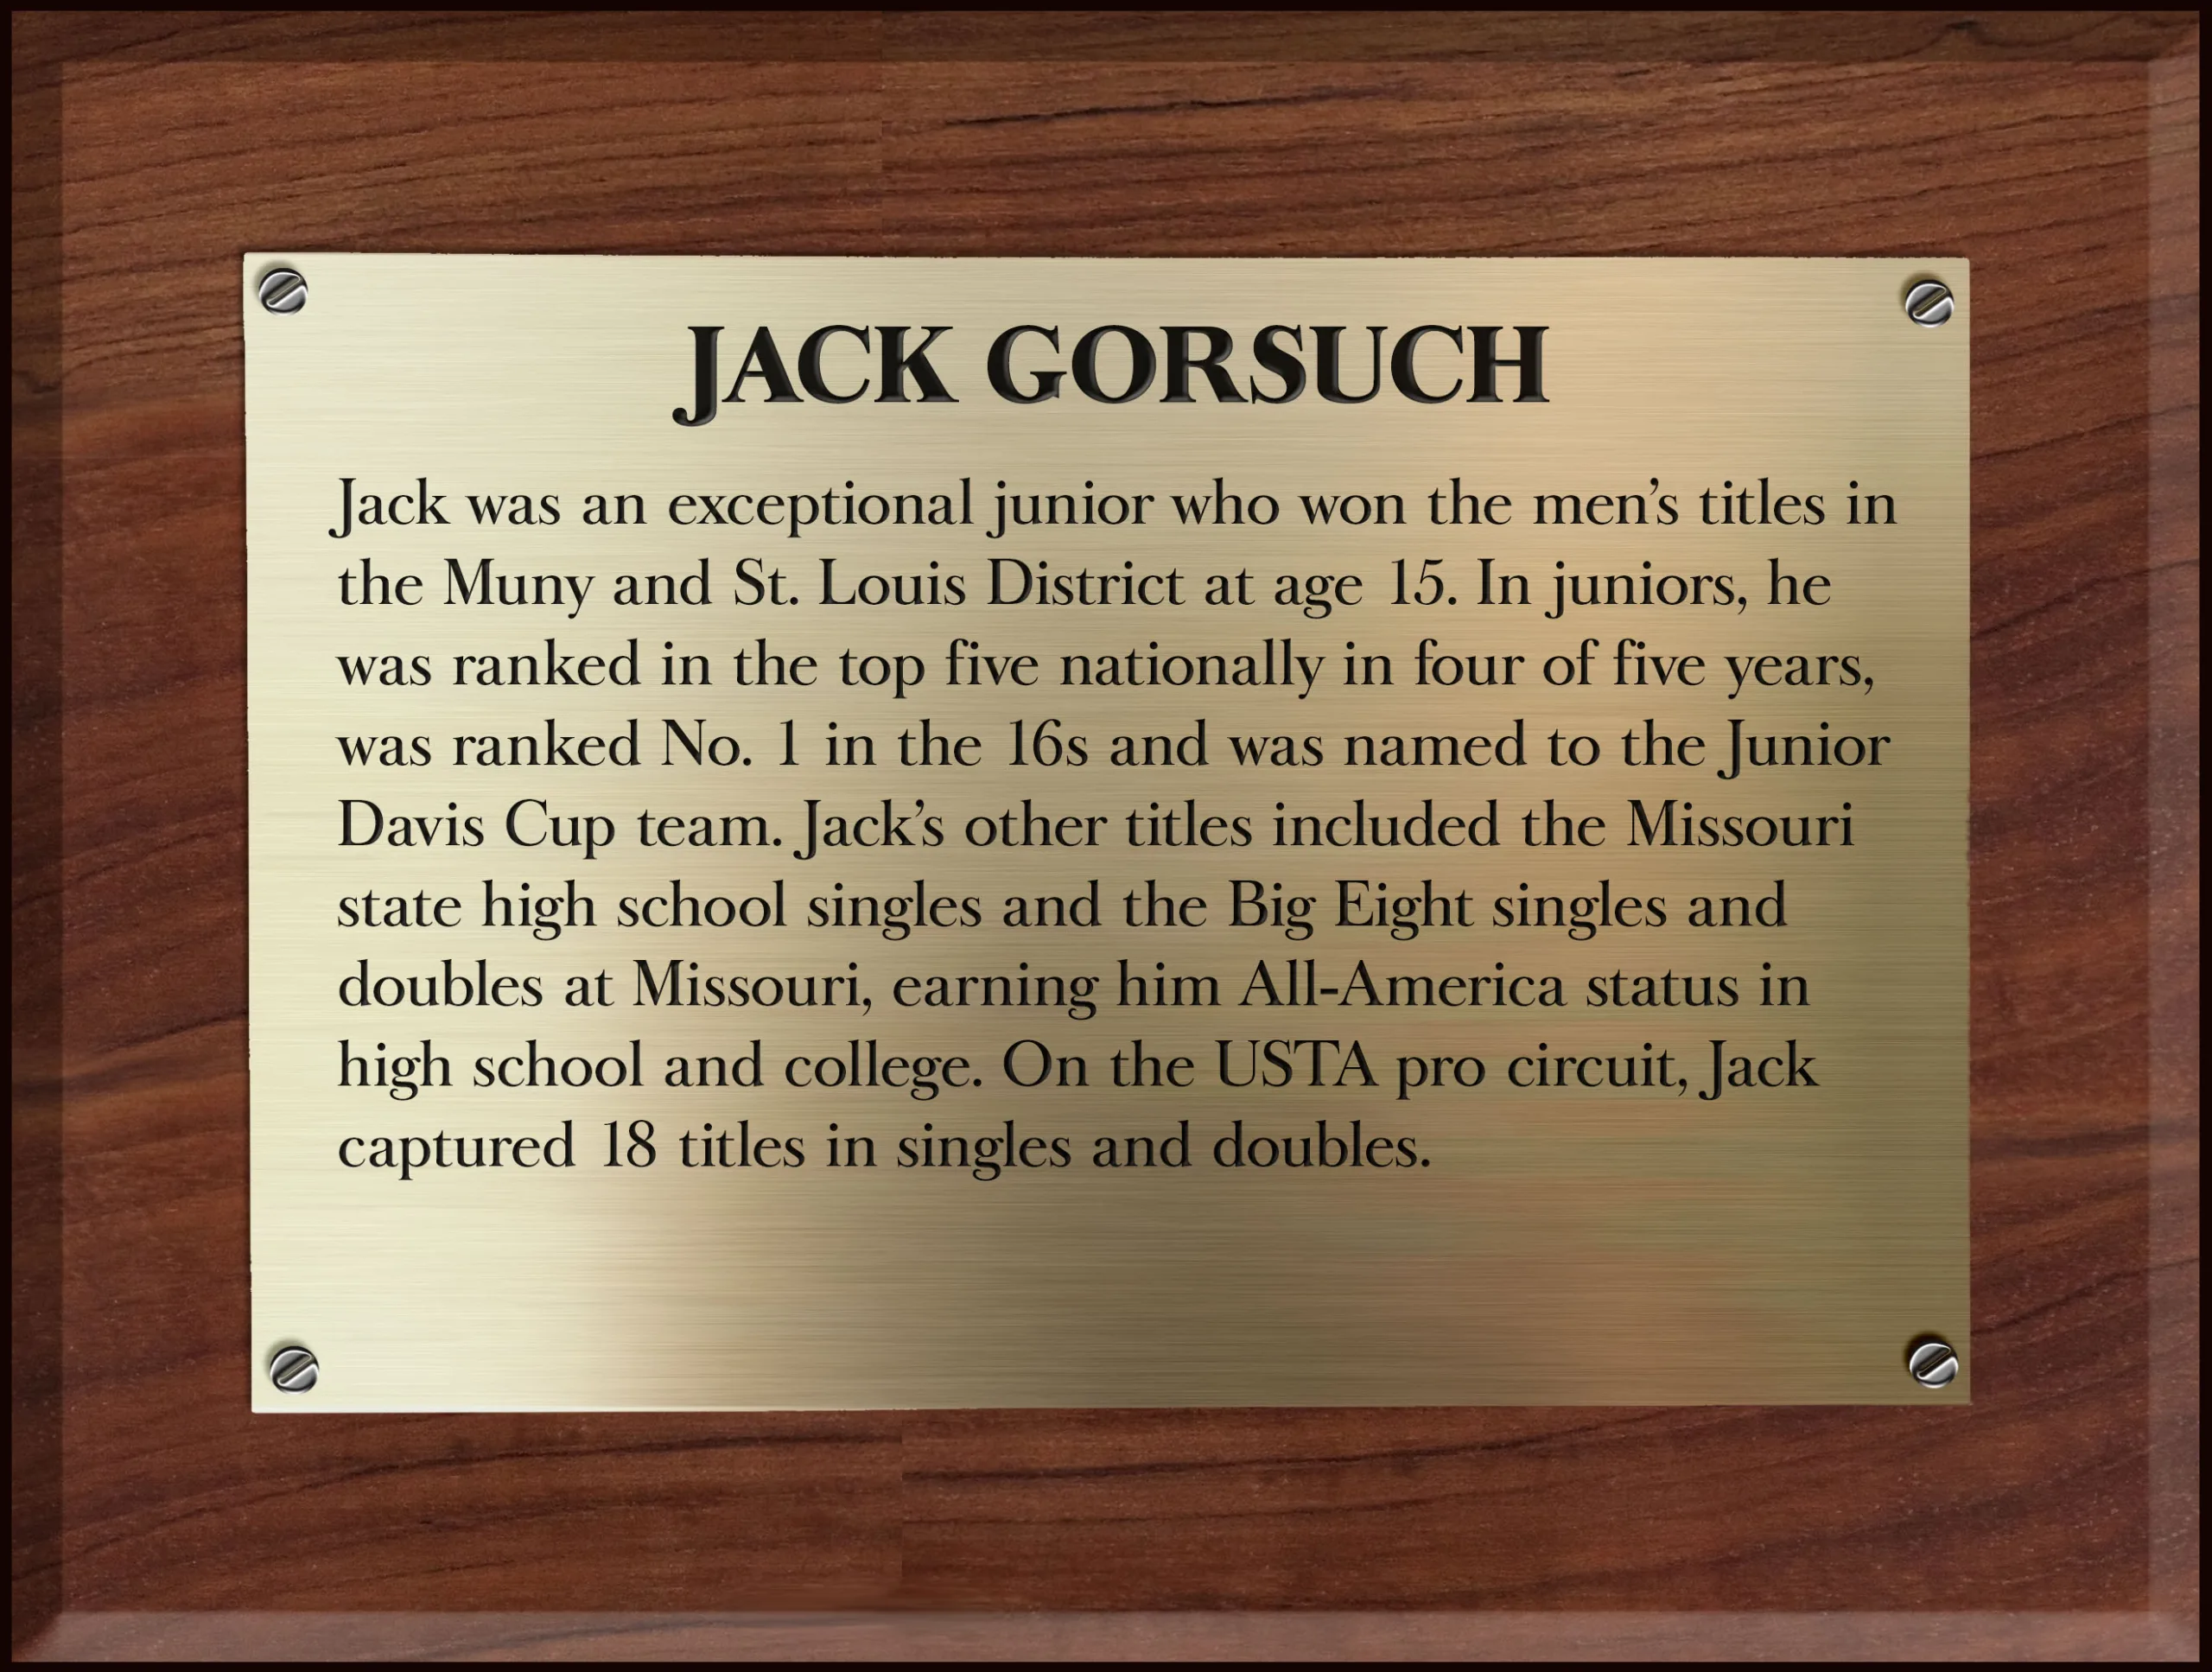 Jack Gorsuch